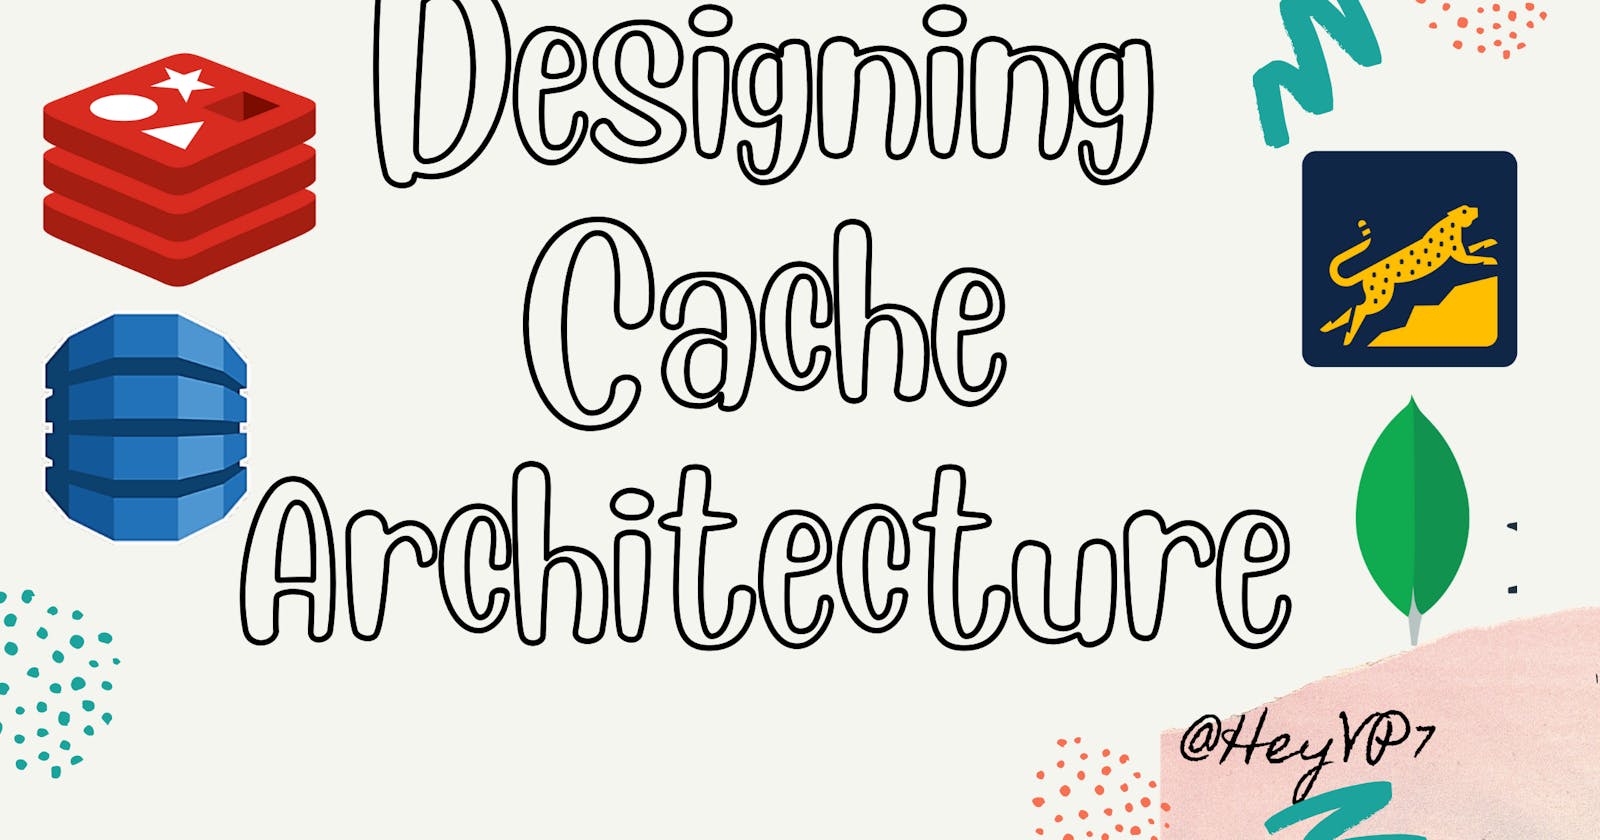 Designing Cache Architecture